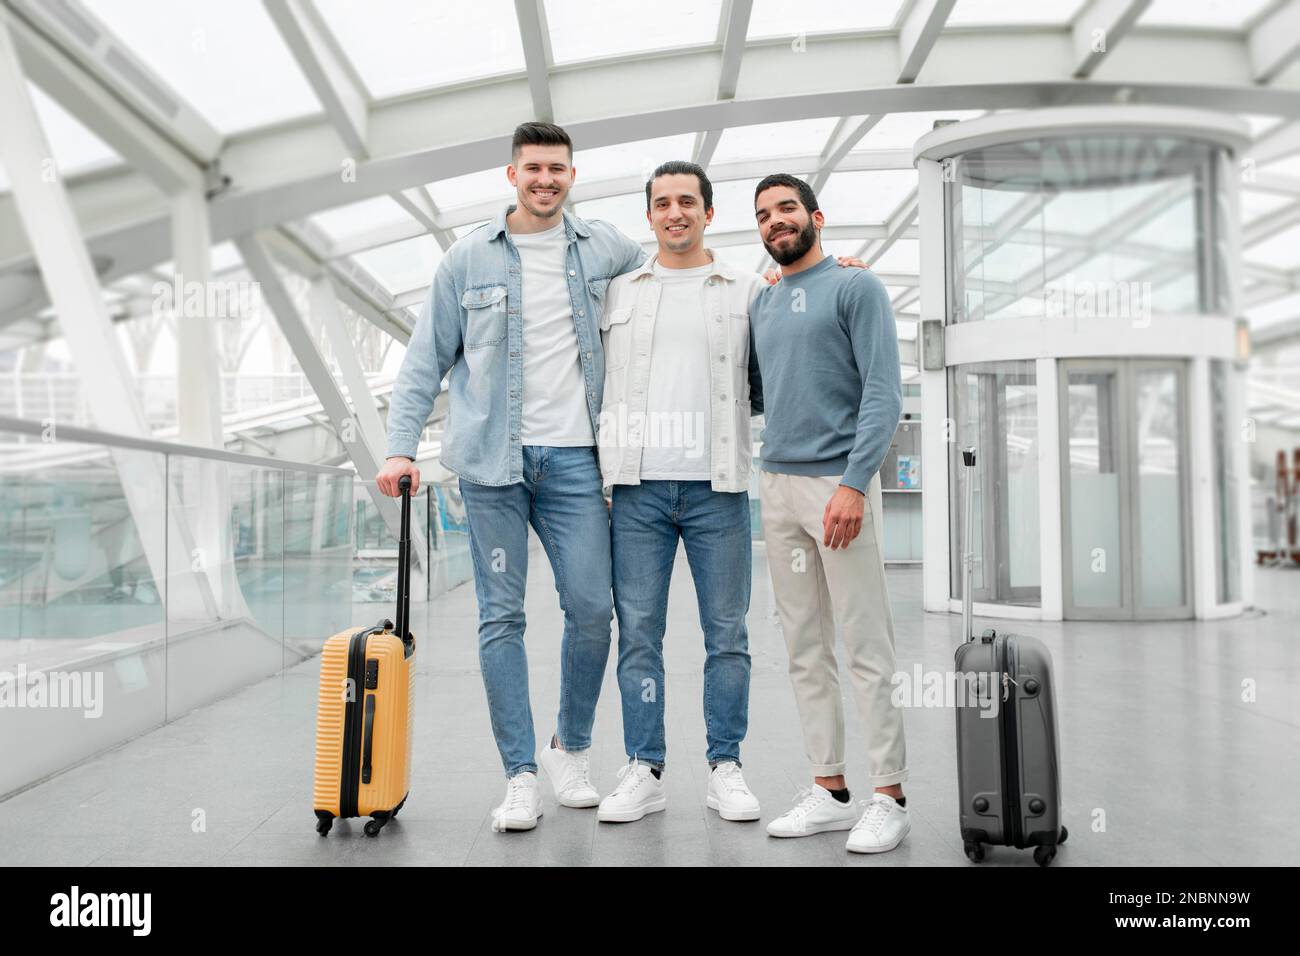 Trois touristes masculins debout avec des valises posant à l'intérieur de l'aéroport Banque D'Images